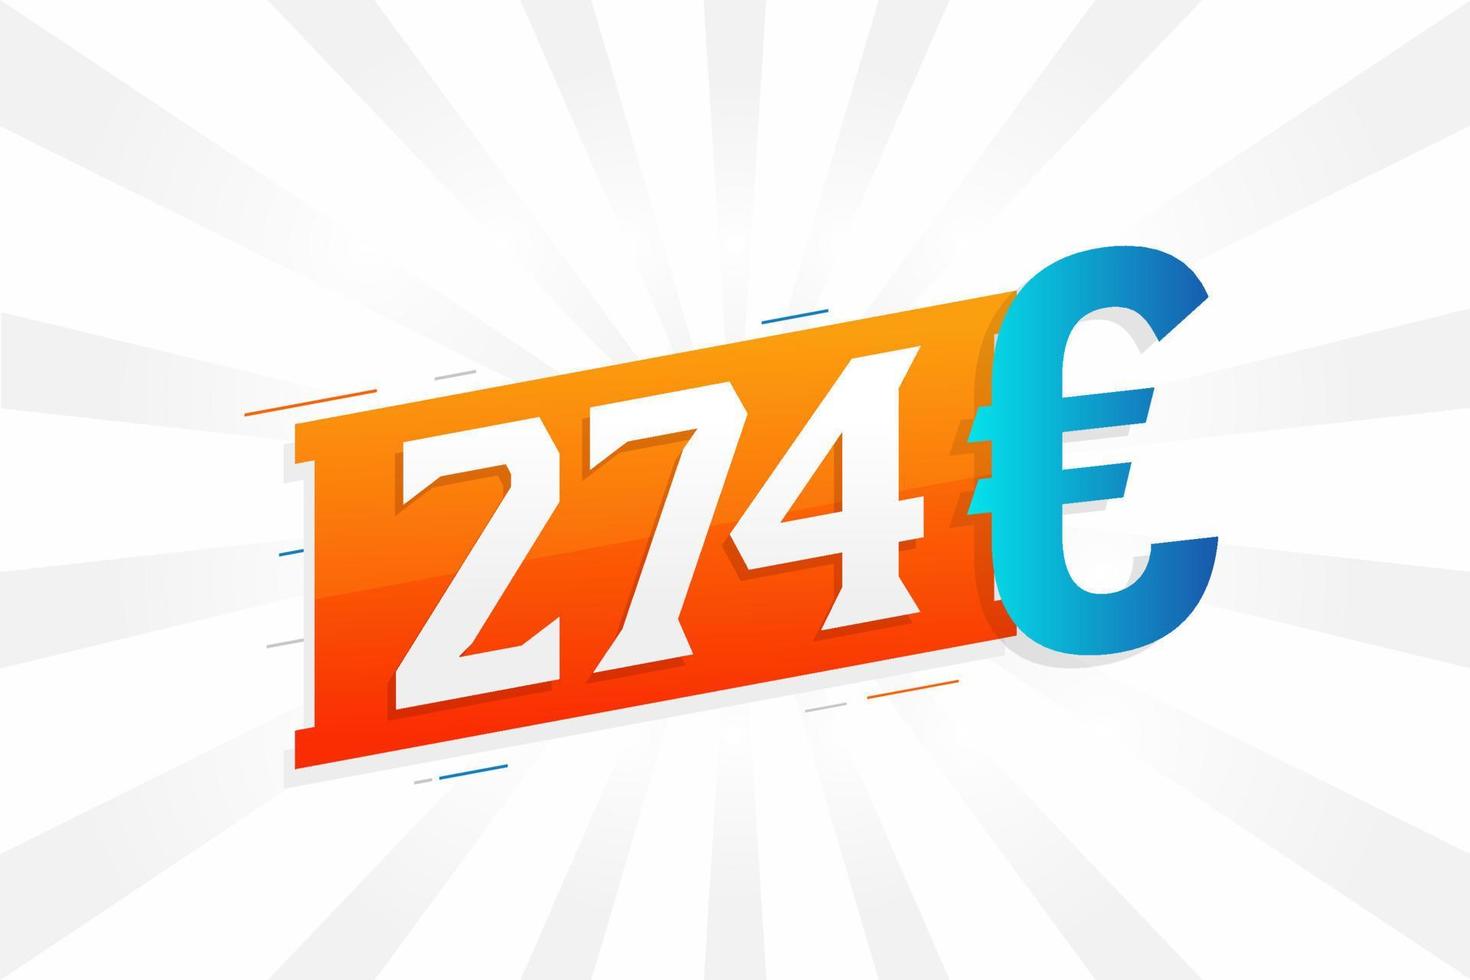 274-Euro-Währungsvektor-Textsymbol. 274 euro geldstockvektor der europäischen union vektor